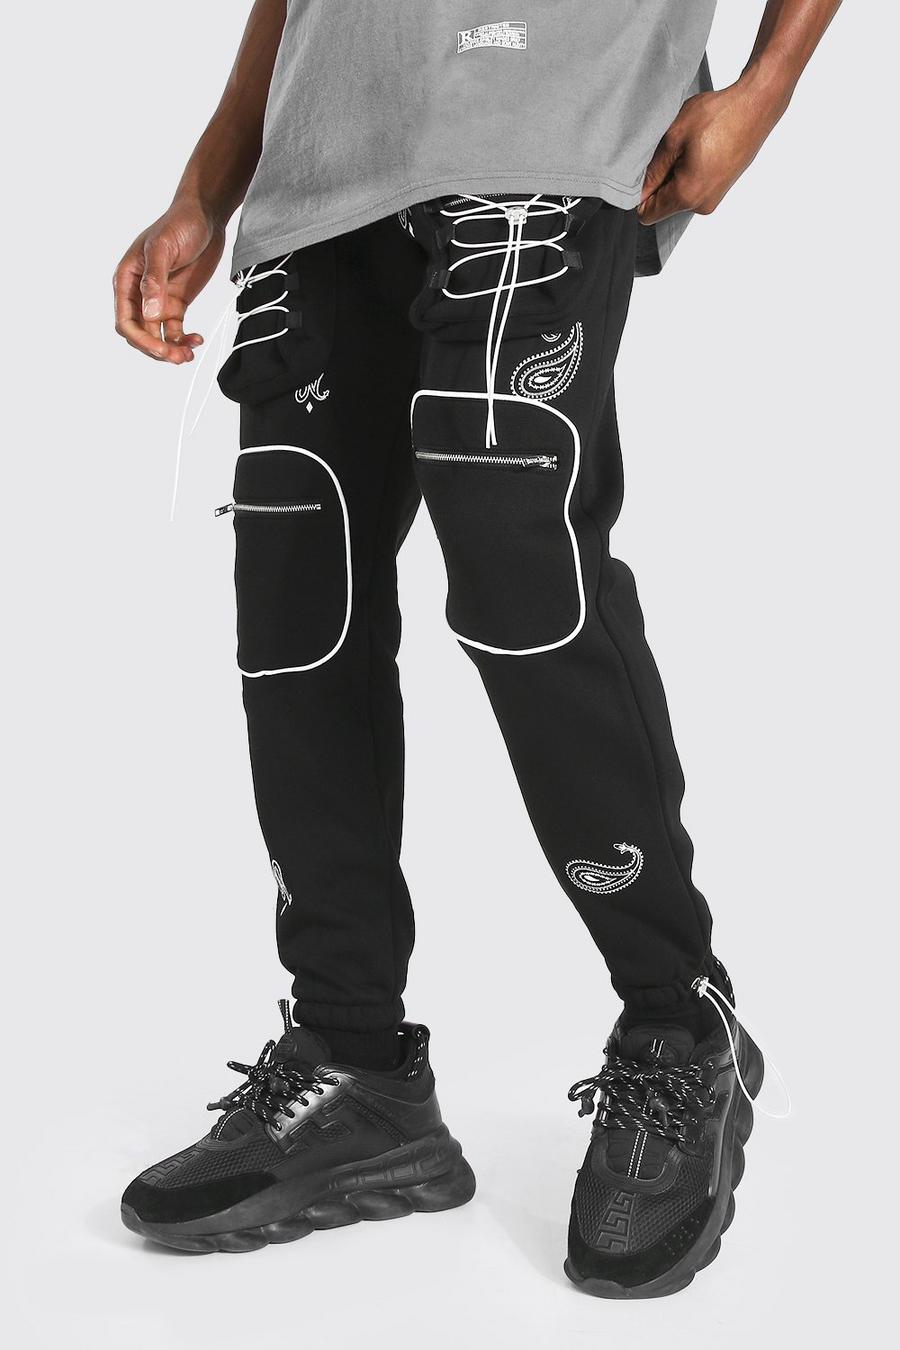 שחור מכנסי ריצה דגמ"ח בסגנון שימושי עם רקמת בנדנה image number 1